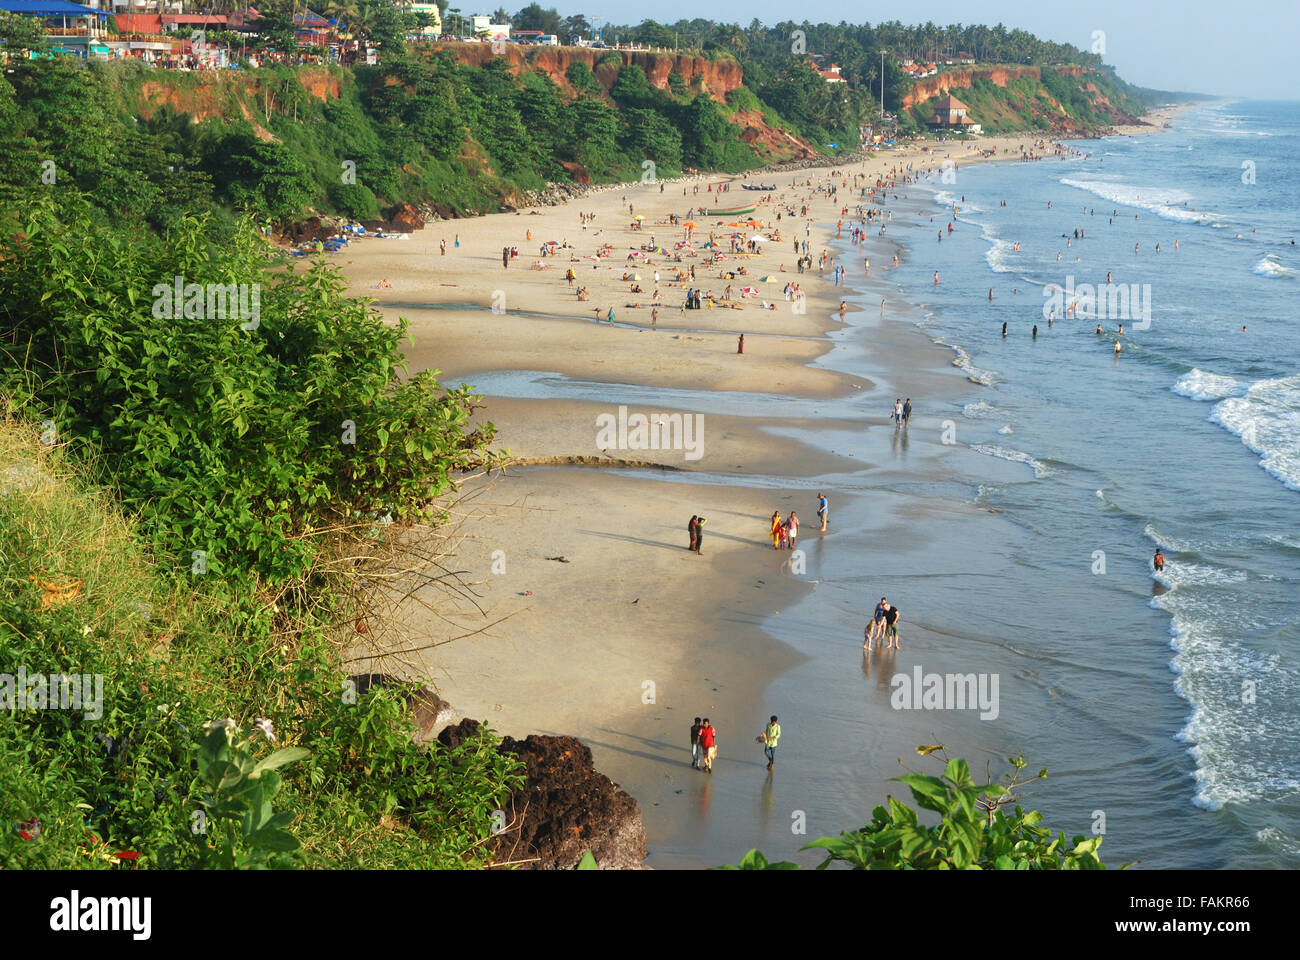 Varkala beach et Cliff, Kerala, Inde.Cette destination touristique internationale est à 50 km de Trivandrum. Banque D'Images